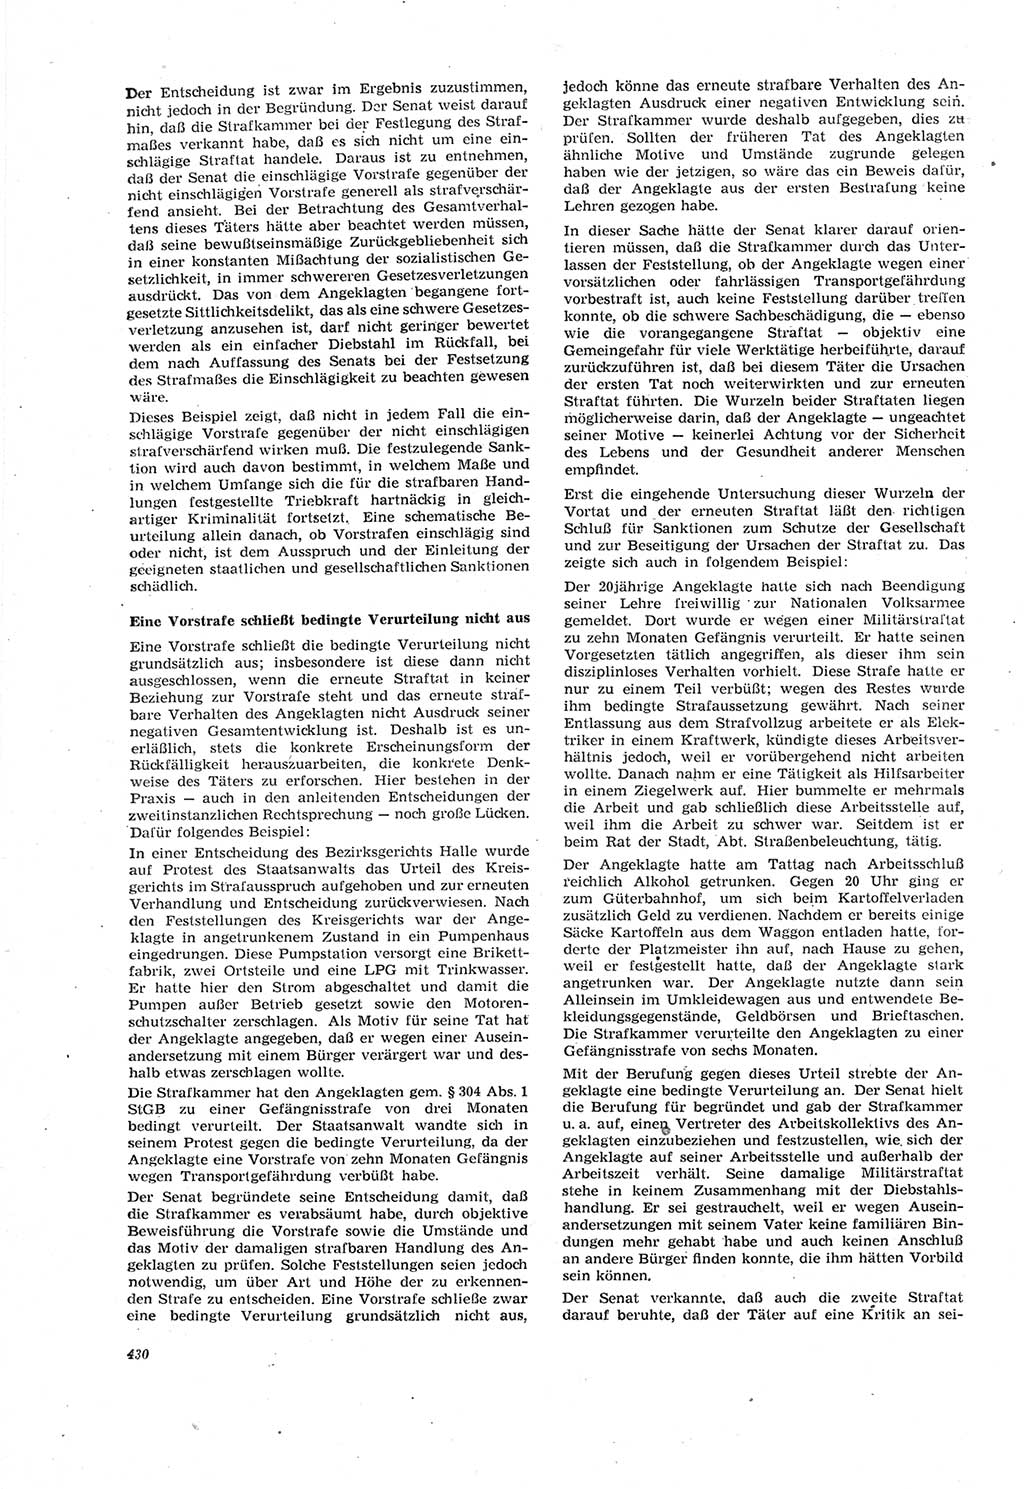 Neue Justiz (NJ), Zeitschrift für Recht und Rechtswissenschaft [Deutsche Demokratische Republik (DDR)], 18. Jahrgang 1964, Seite 430 (NJ DDR 1964, S. 430)